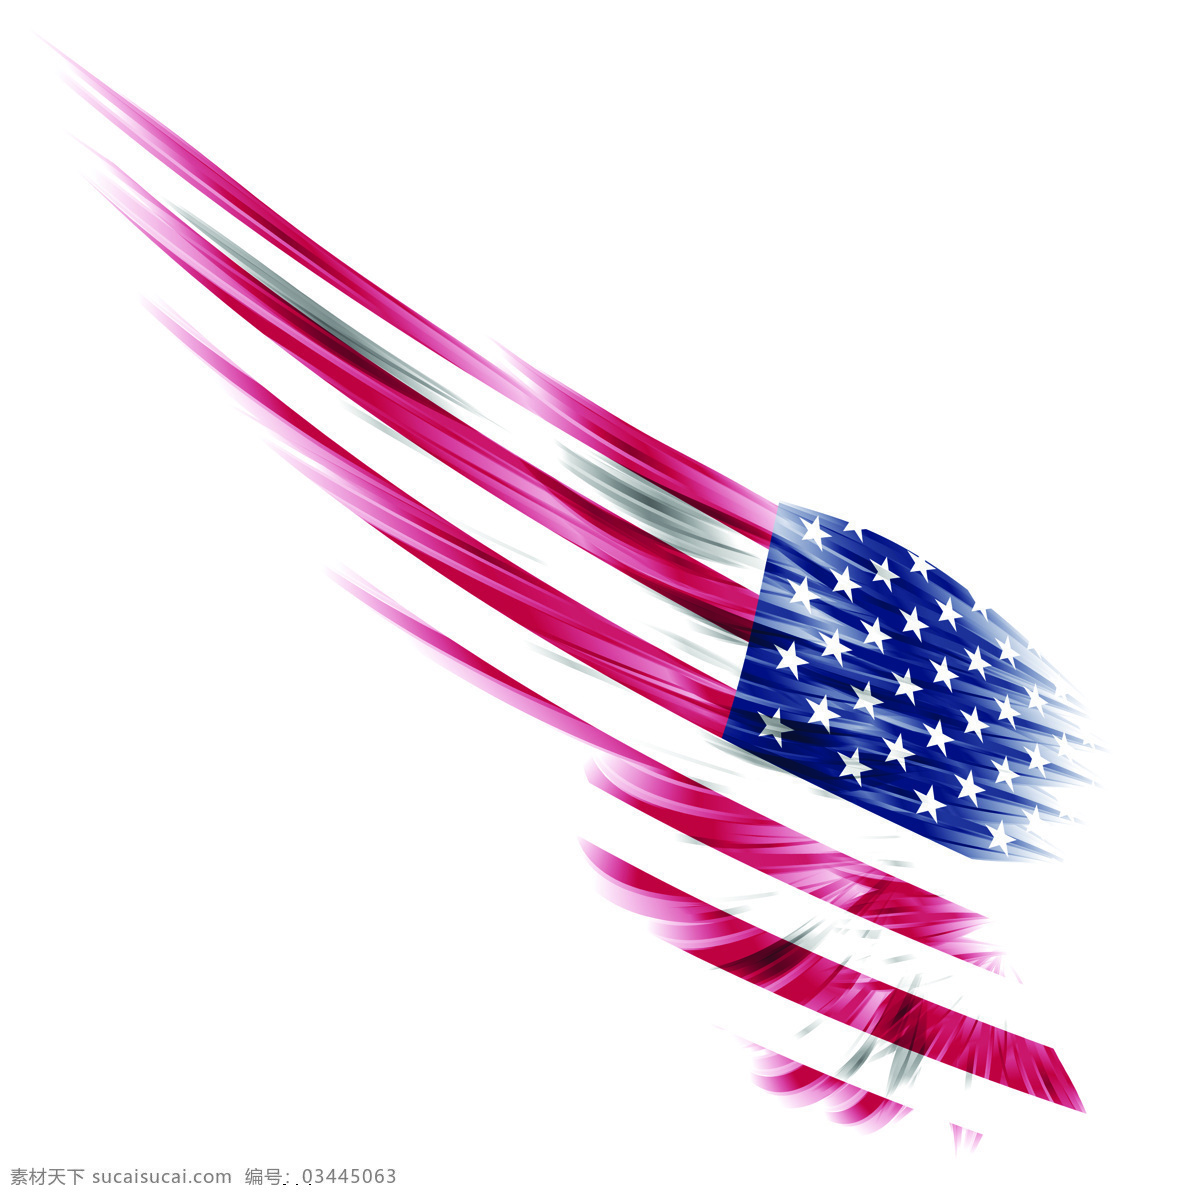 美国国旗 翅膀素材 国旗 国旗素材 高清图片 飞祥 各国国旗翅膀 军队素材 国旗翅膀 其他图标 标志图标